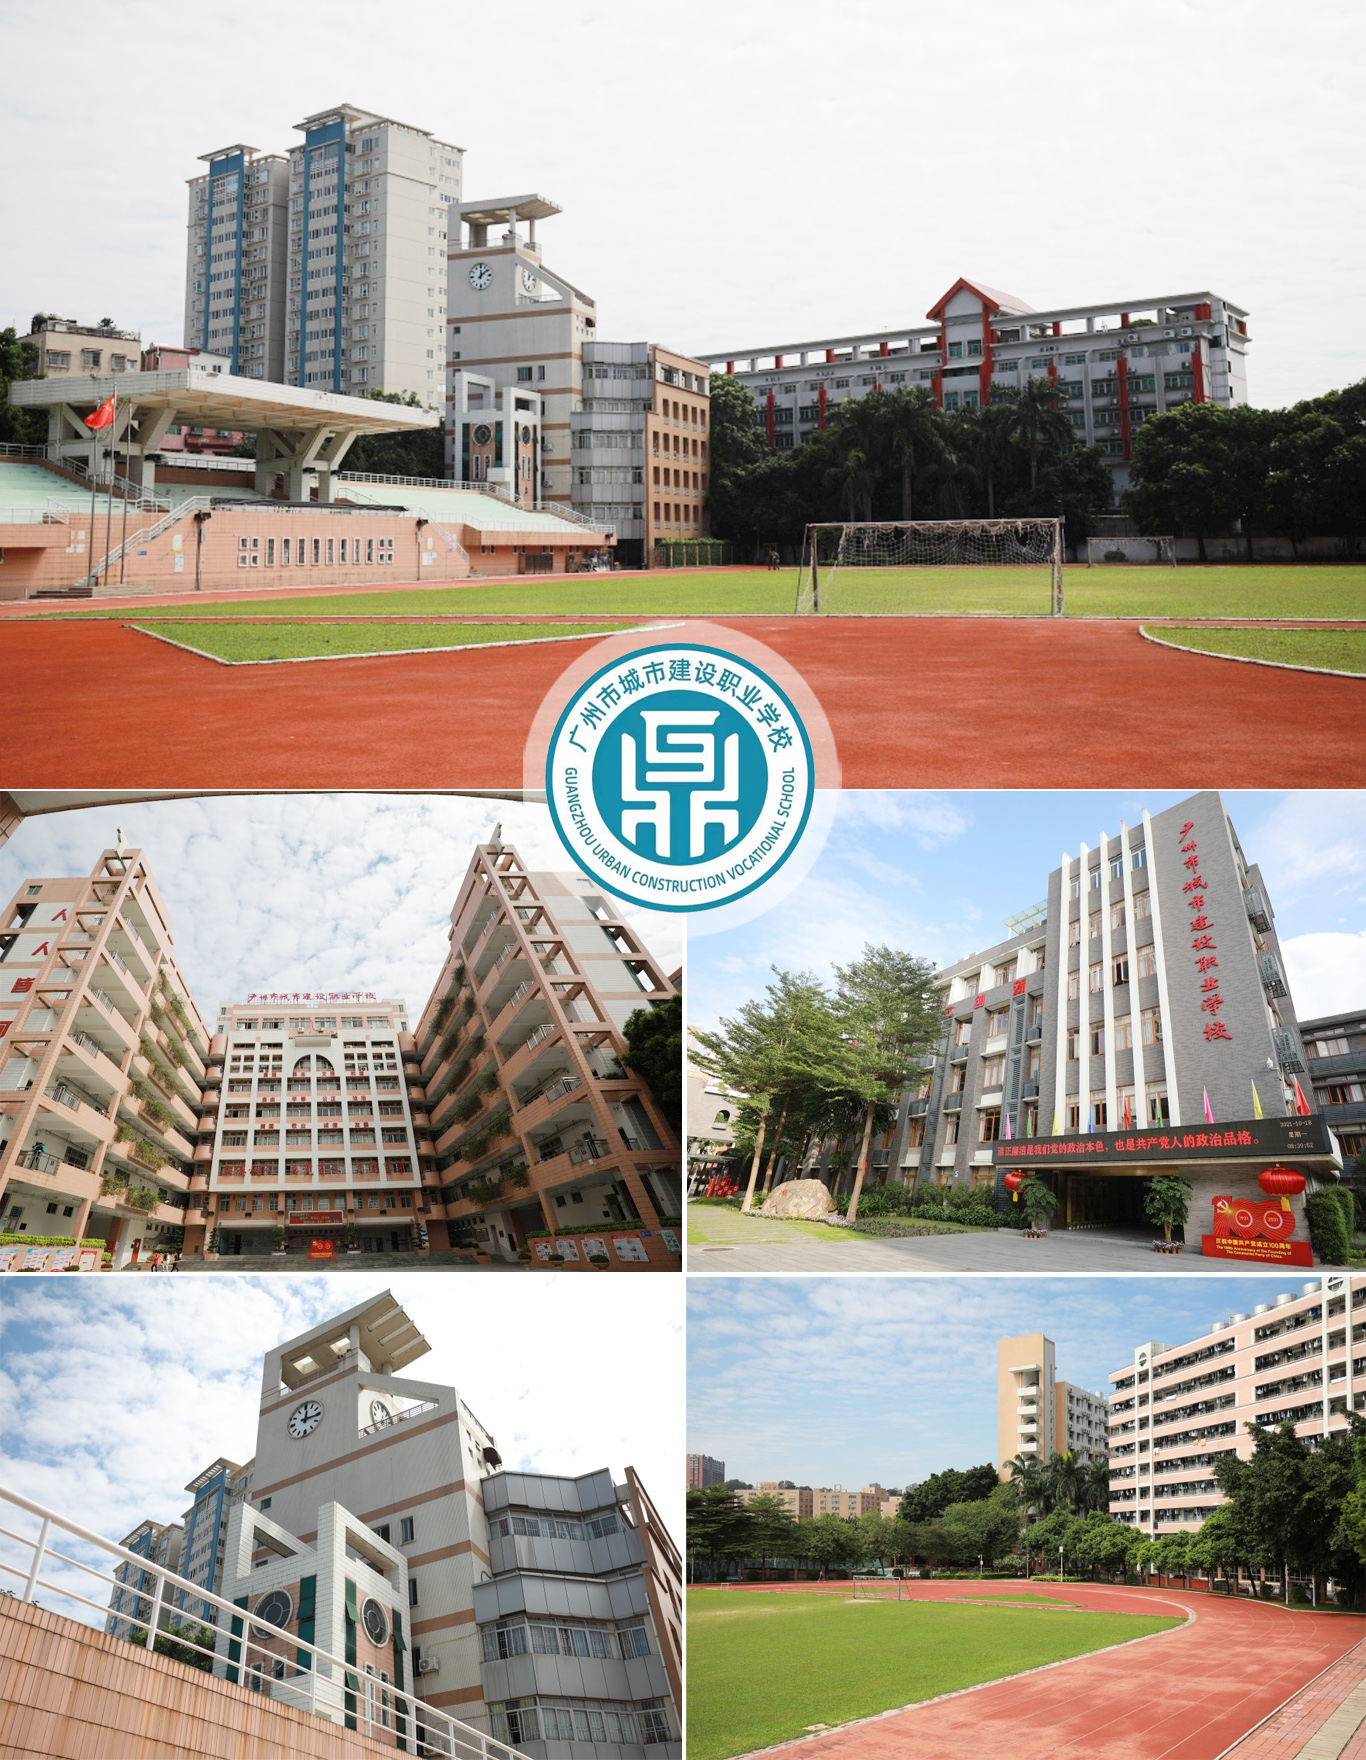 广州市城市建设职业学校